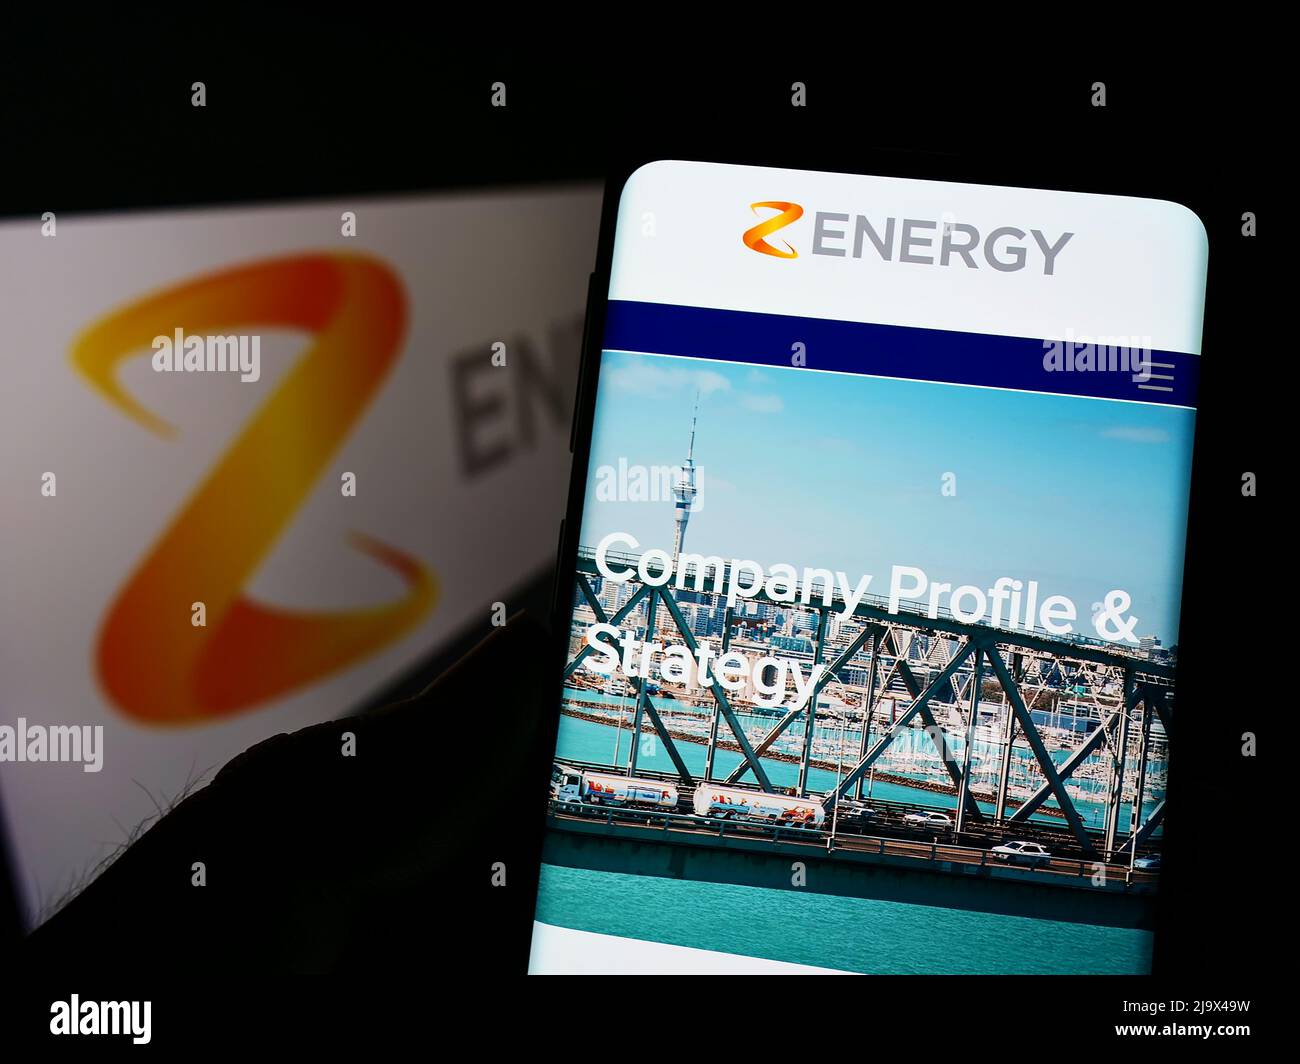 Personne tenant un téléphone portable avec le site Web de la société néo-zélandaise Z Energy Limited à l'écran devant le logo. Concentrez-vous sur le centre de l'écran du téléphone. Banque D'Images